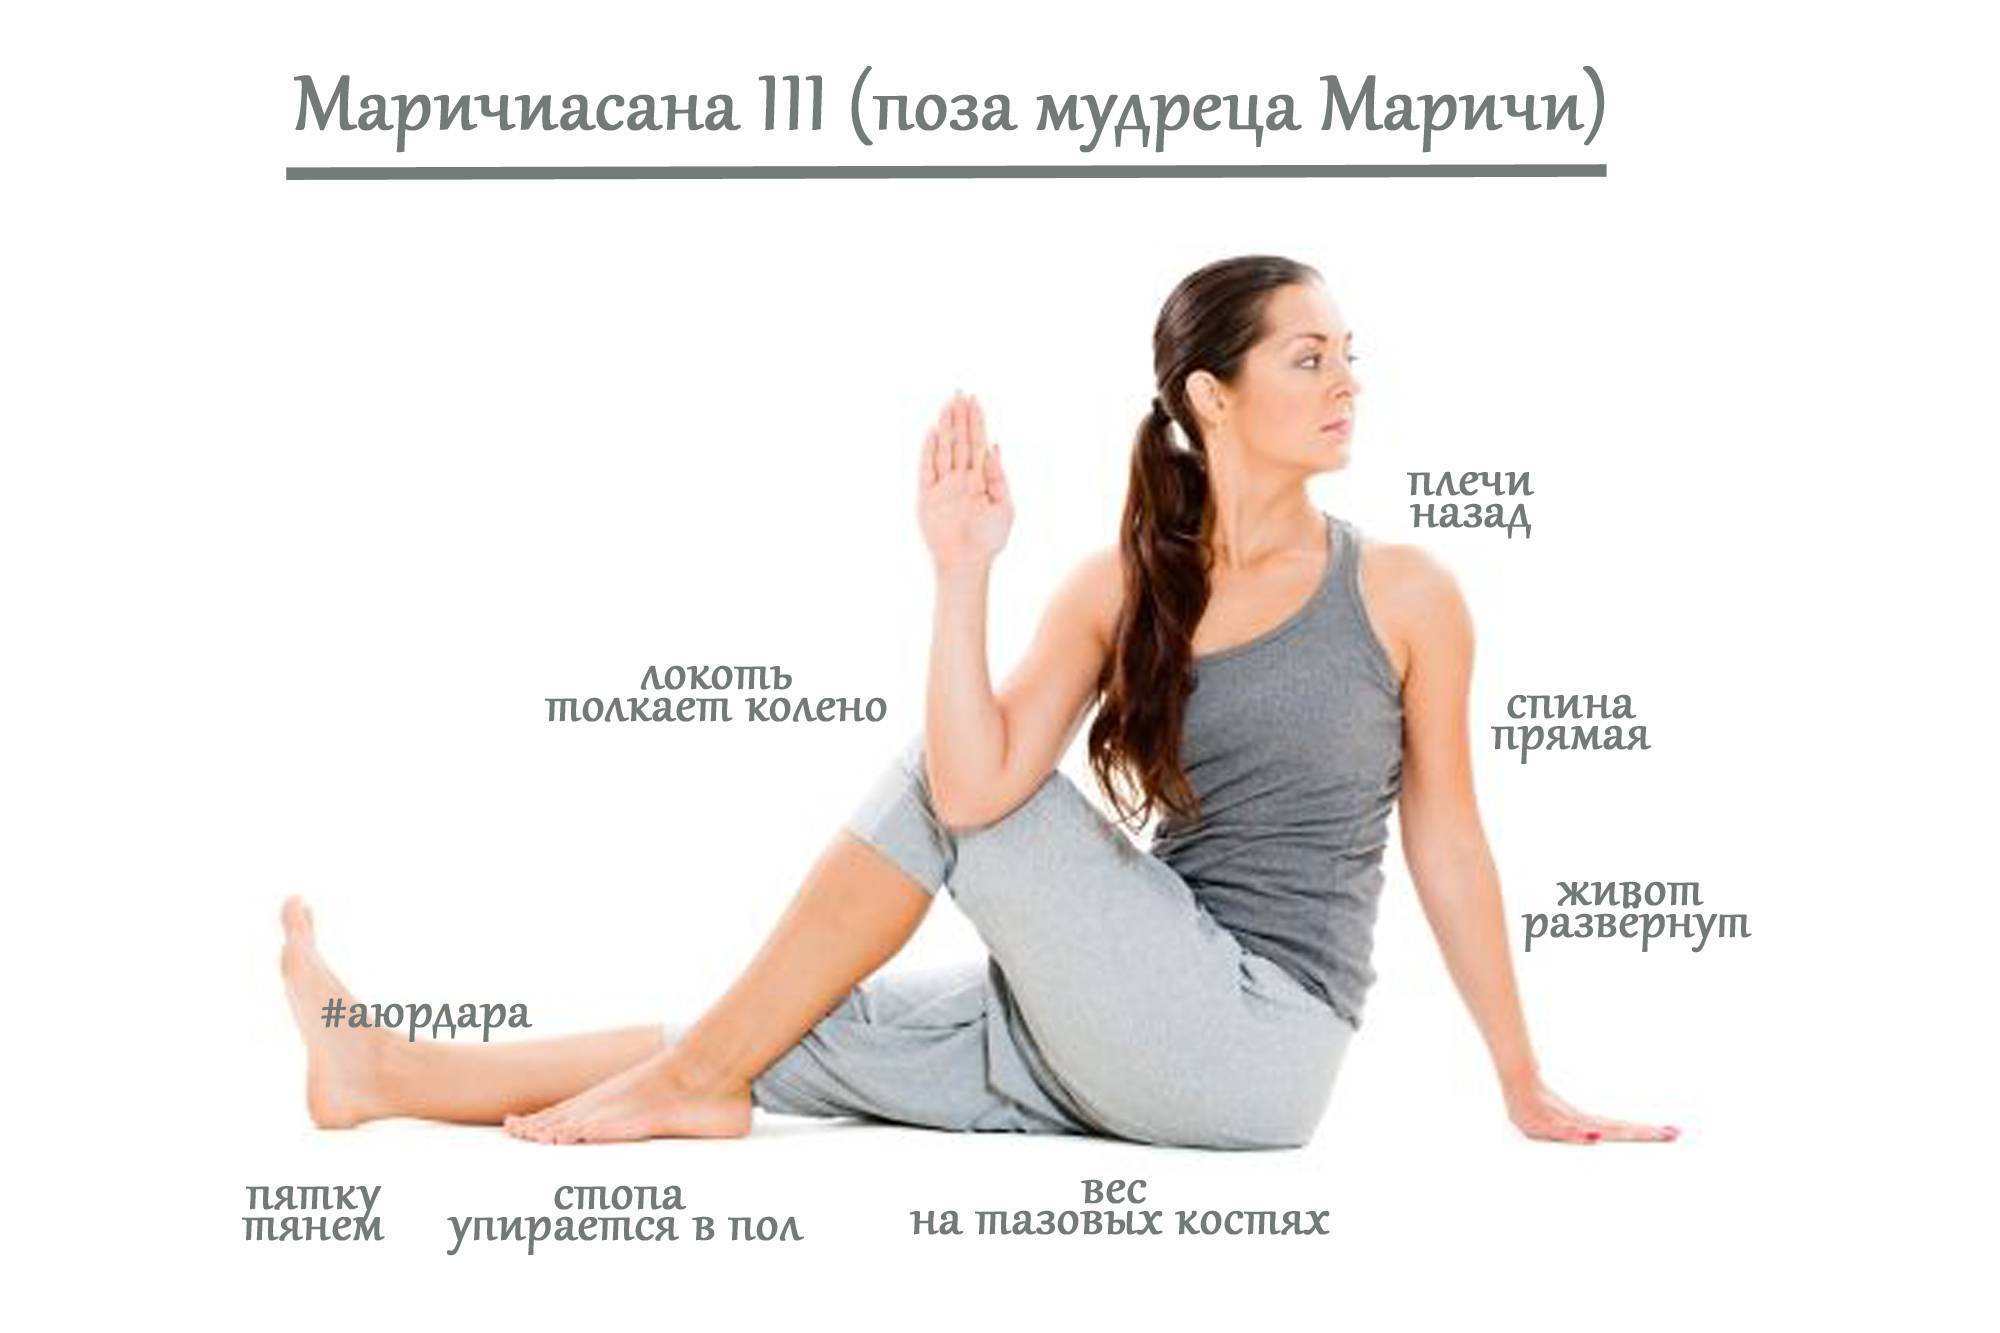 Секреты выполнения Маричиасаны 1 и 2, техника позы мудреца маричи в йоге, польза асаны